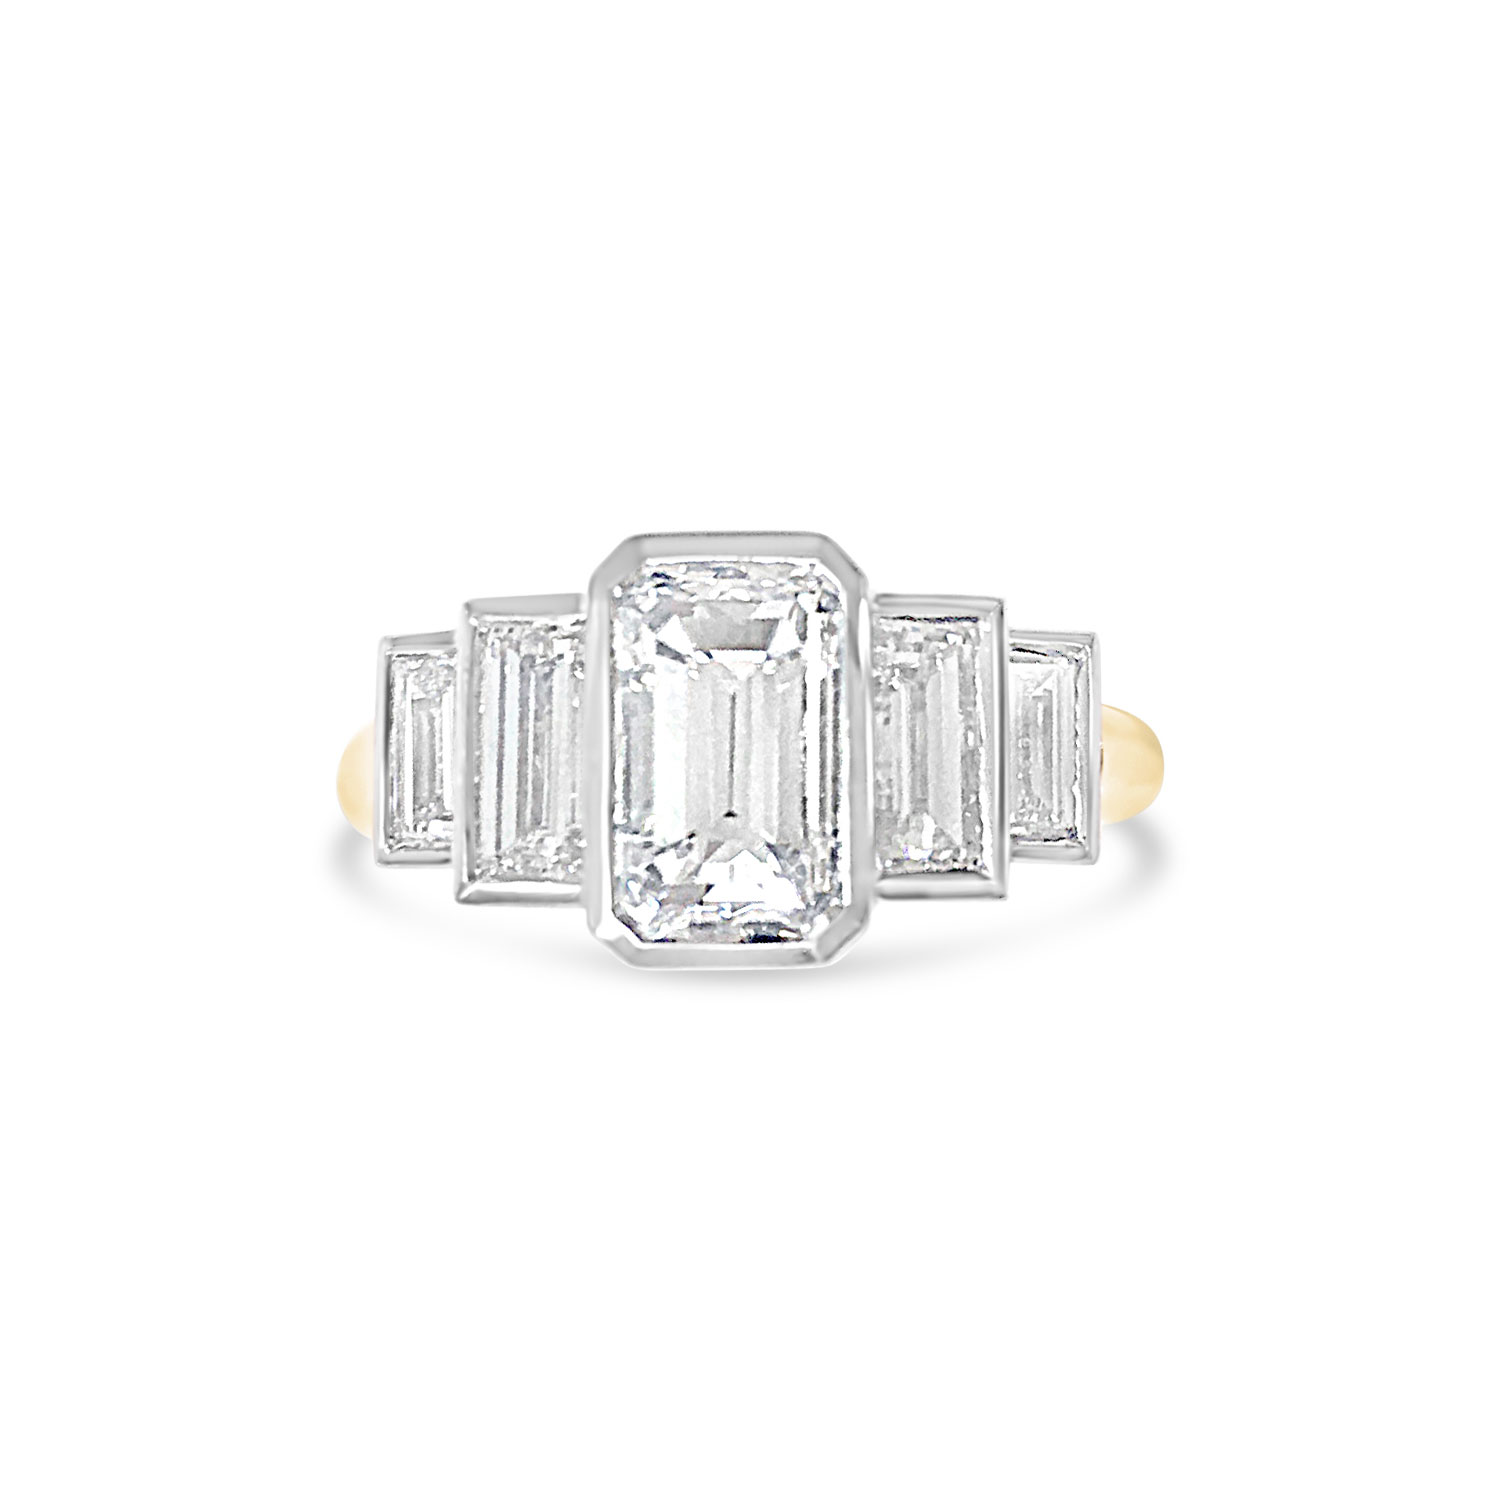 Bespoke emerald-cut diamond five-stone ring